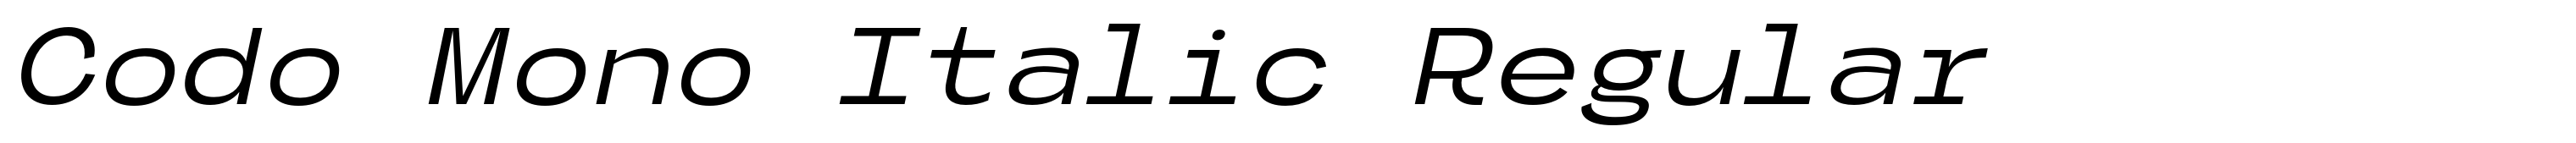 Codo Mono Italic Regular